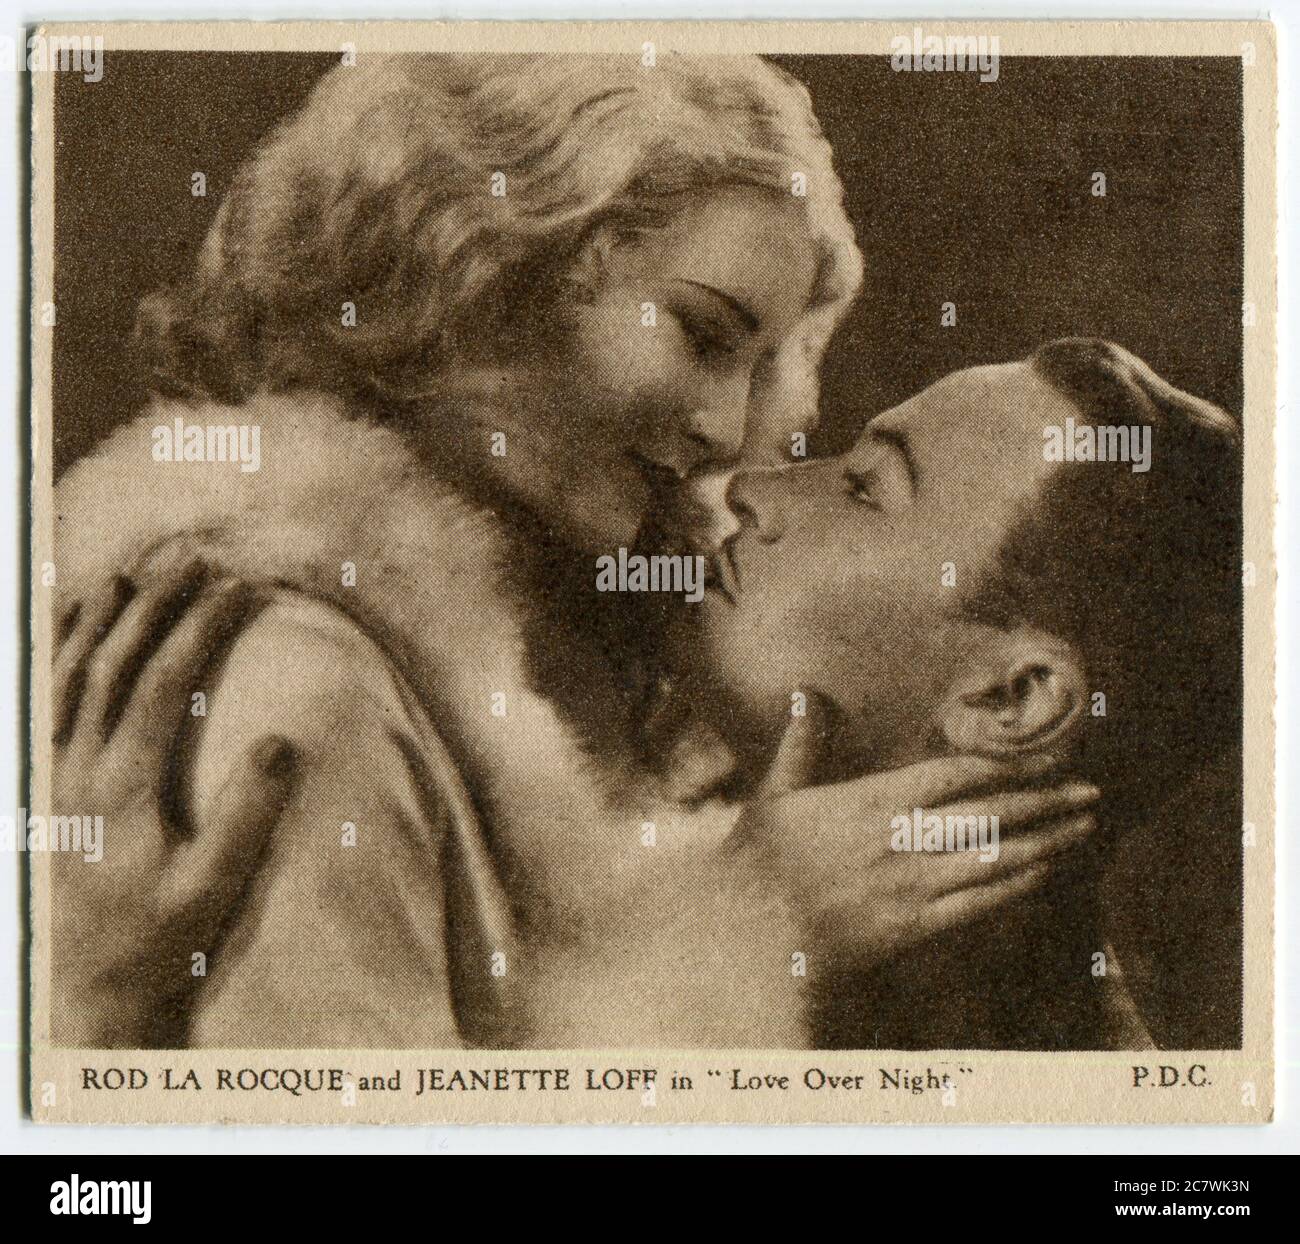 Carte à cigarettes Kensanas "Love Scenes from Famous films" - Rod la Rocque et Jeanette Loff dans "Love over Night". Deuxième série publiée en 1932 par J. Wix & Sons Ltd Banque D'Images